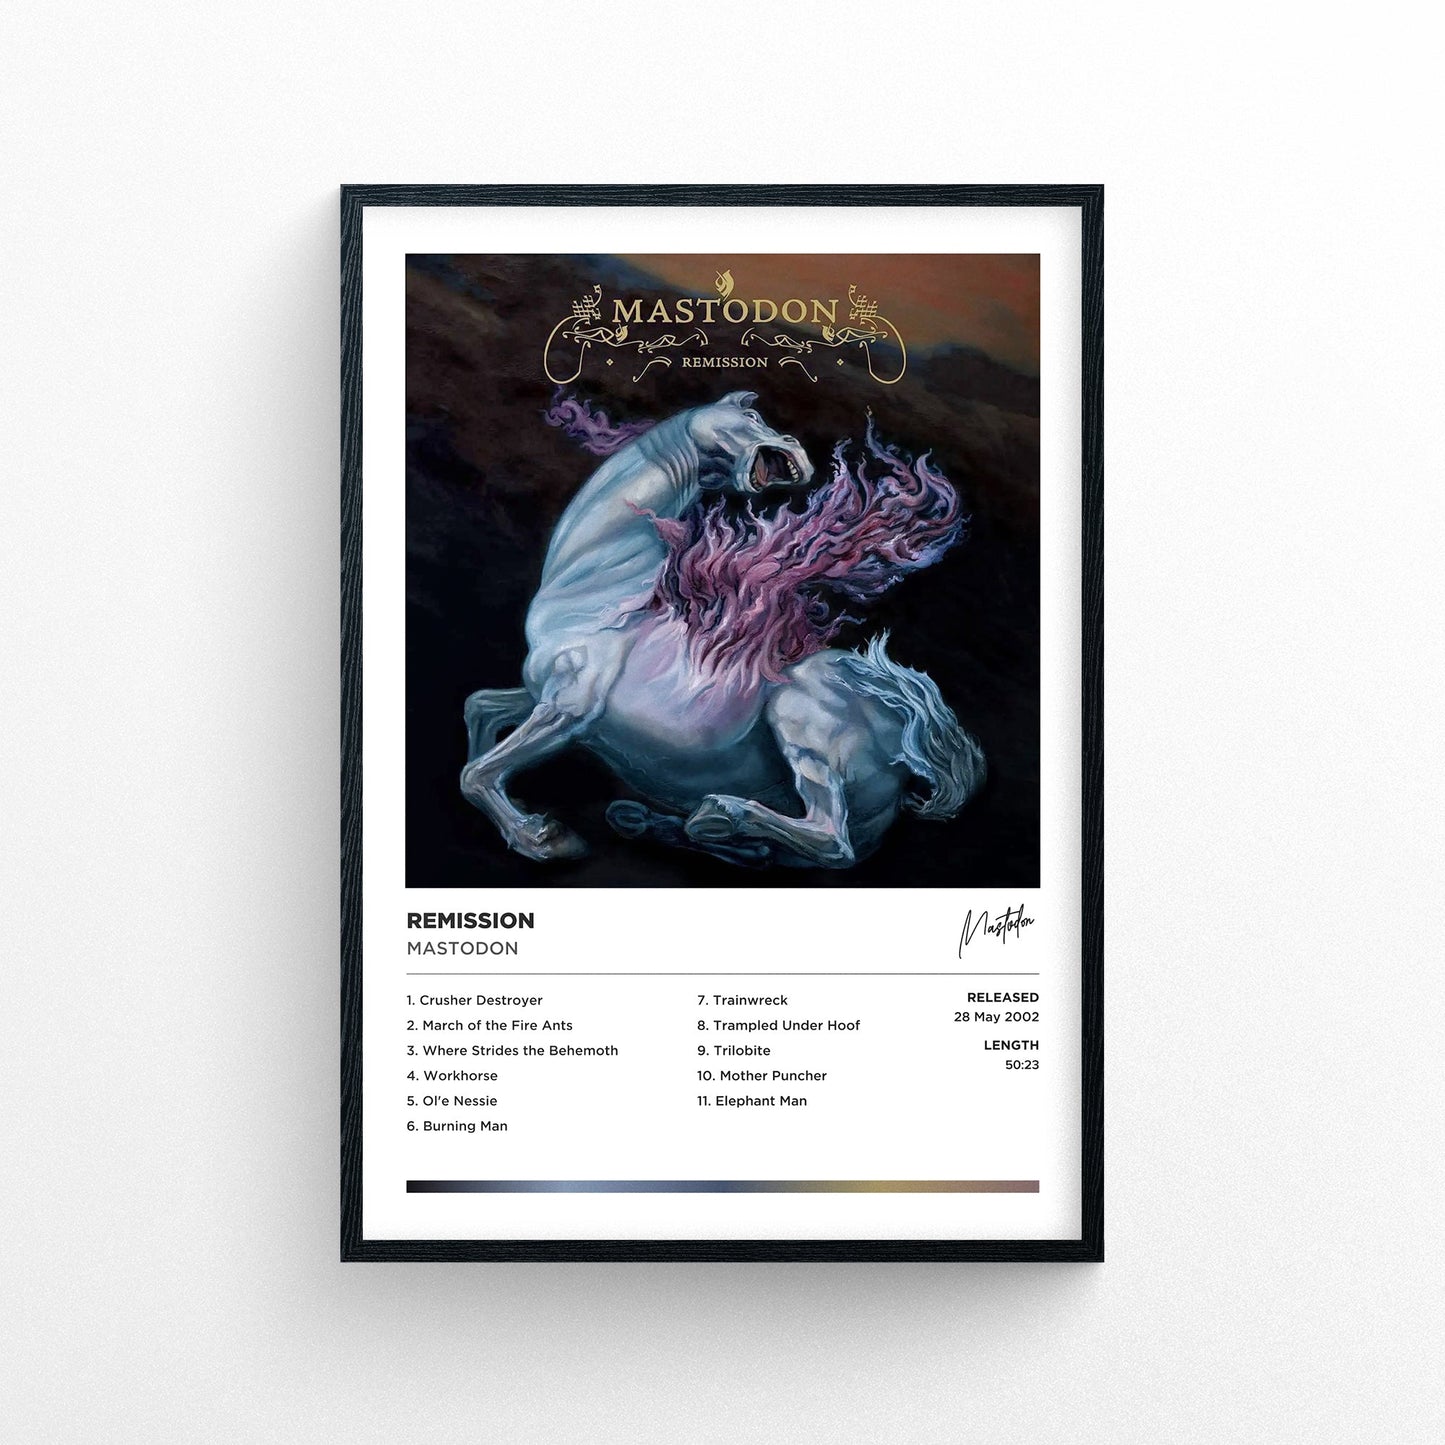 Mastodon - Remission Framed Poster Print | Polaroid Style | Album Cover Artwork